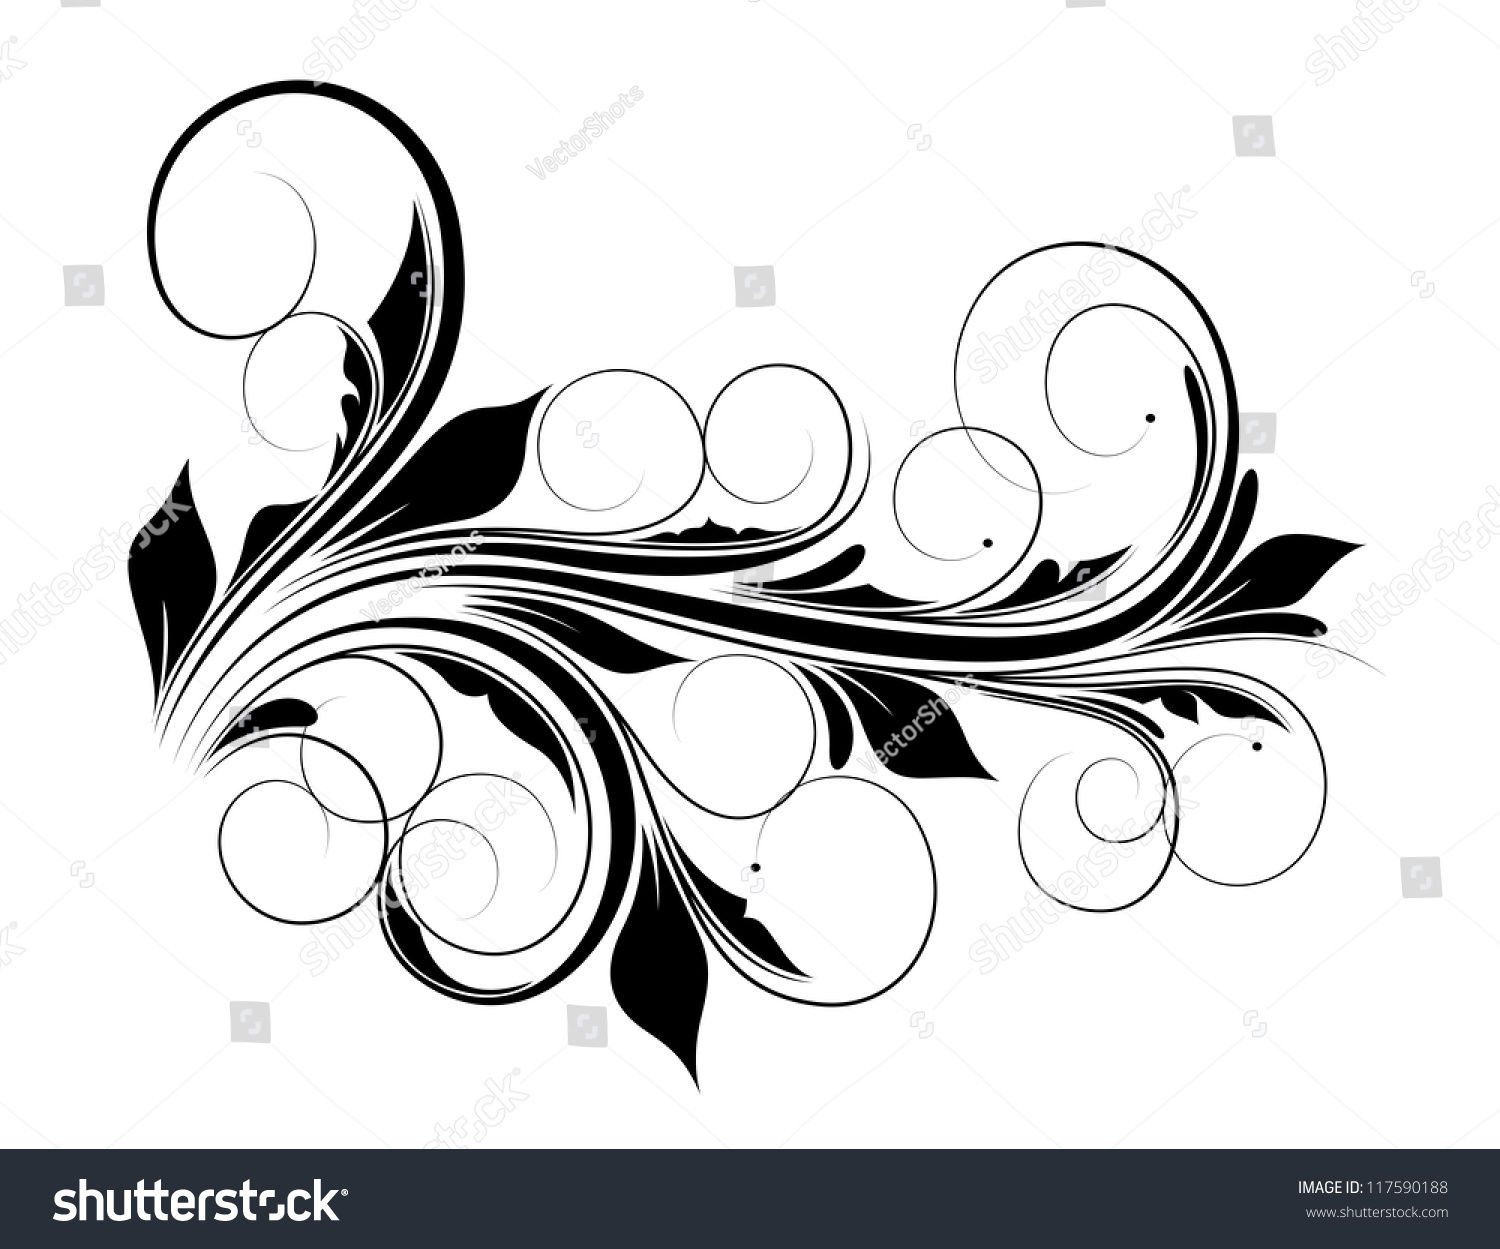 Swirl Vector Design - 117590188 : Shutterstock